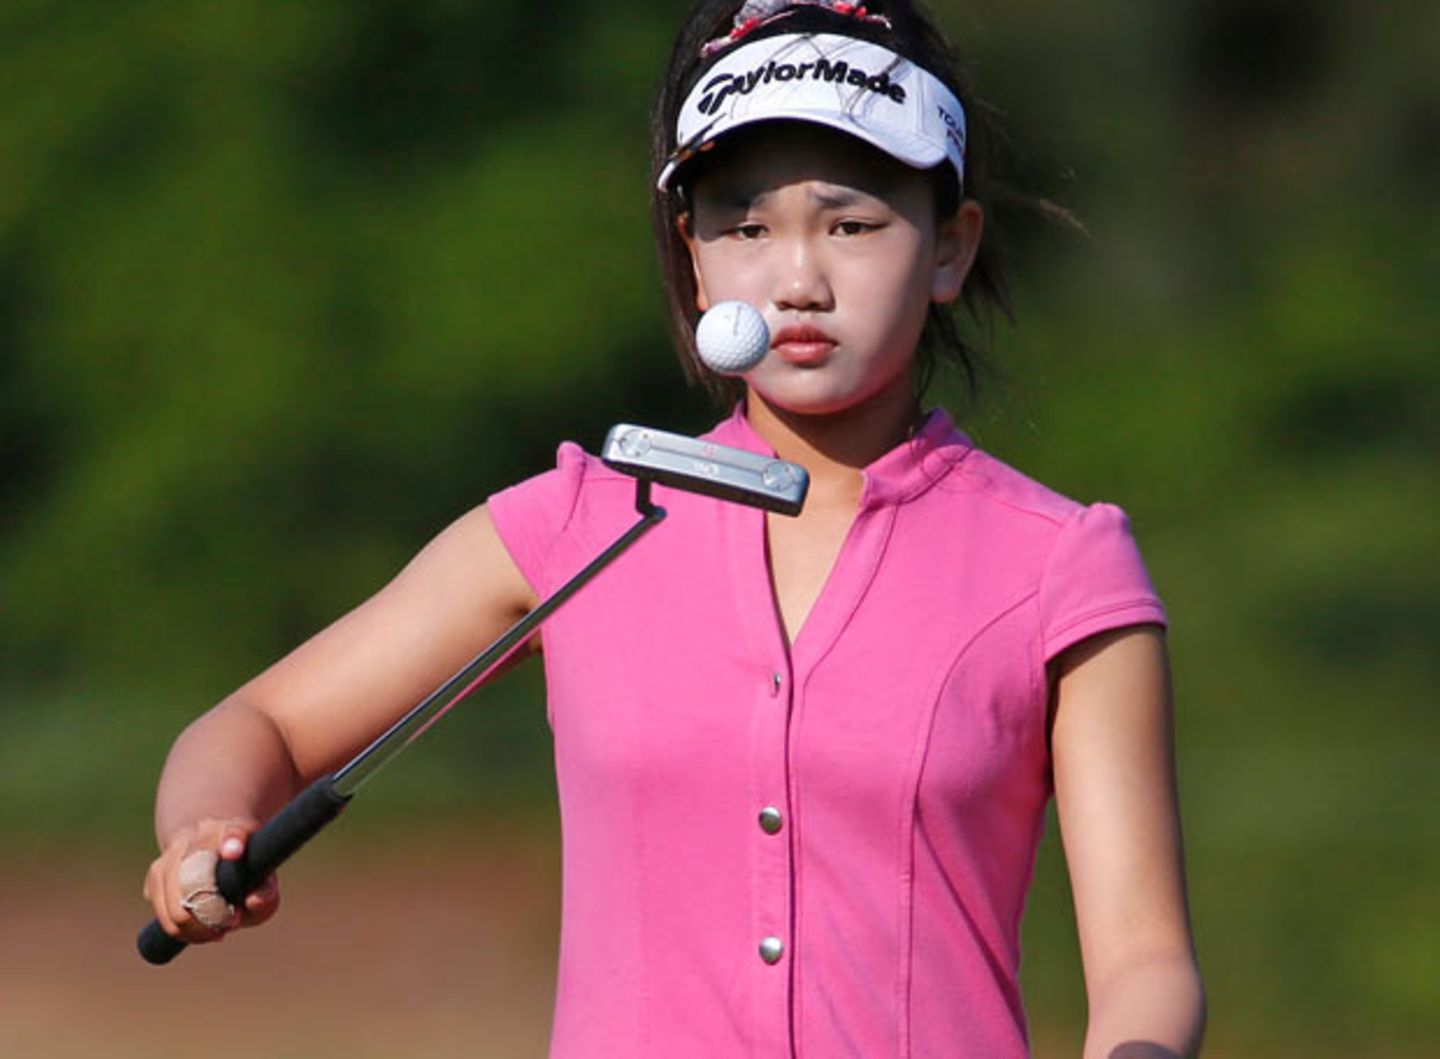 "Ich will Spaß haben und so gut spielen, wie ich kann", sagte die elfjährige Amateurgolferin Lucy Li kurz vor dem Start der 69. US Open in Pinehurst, North Carolina.